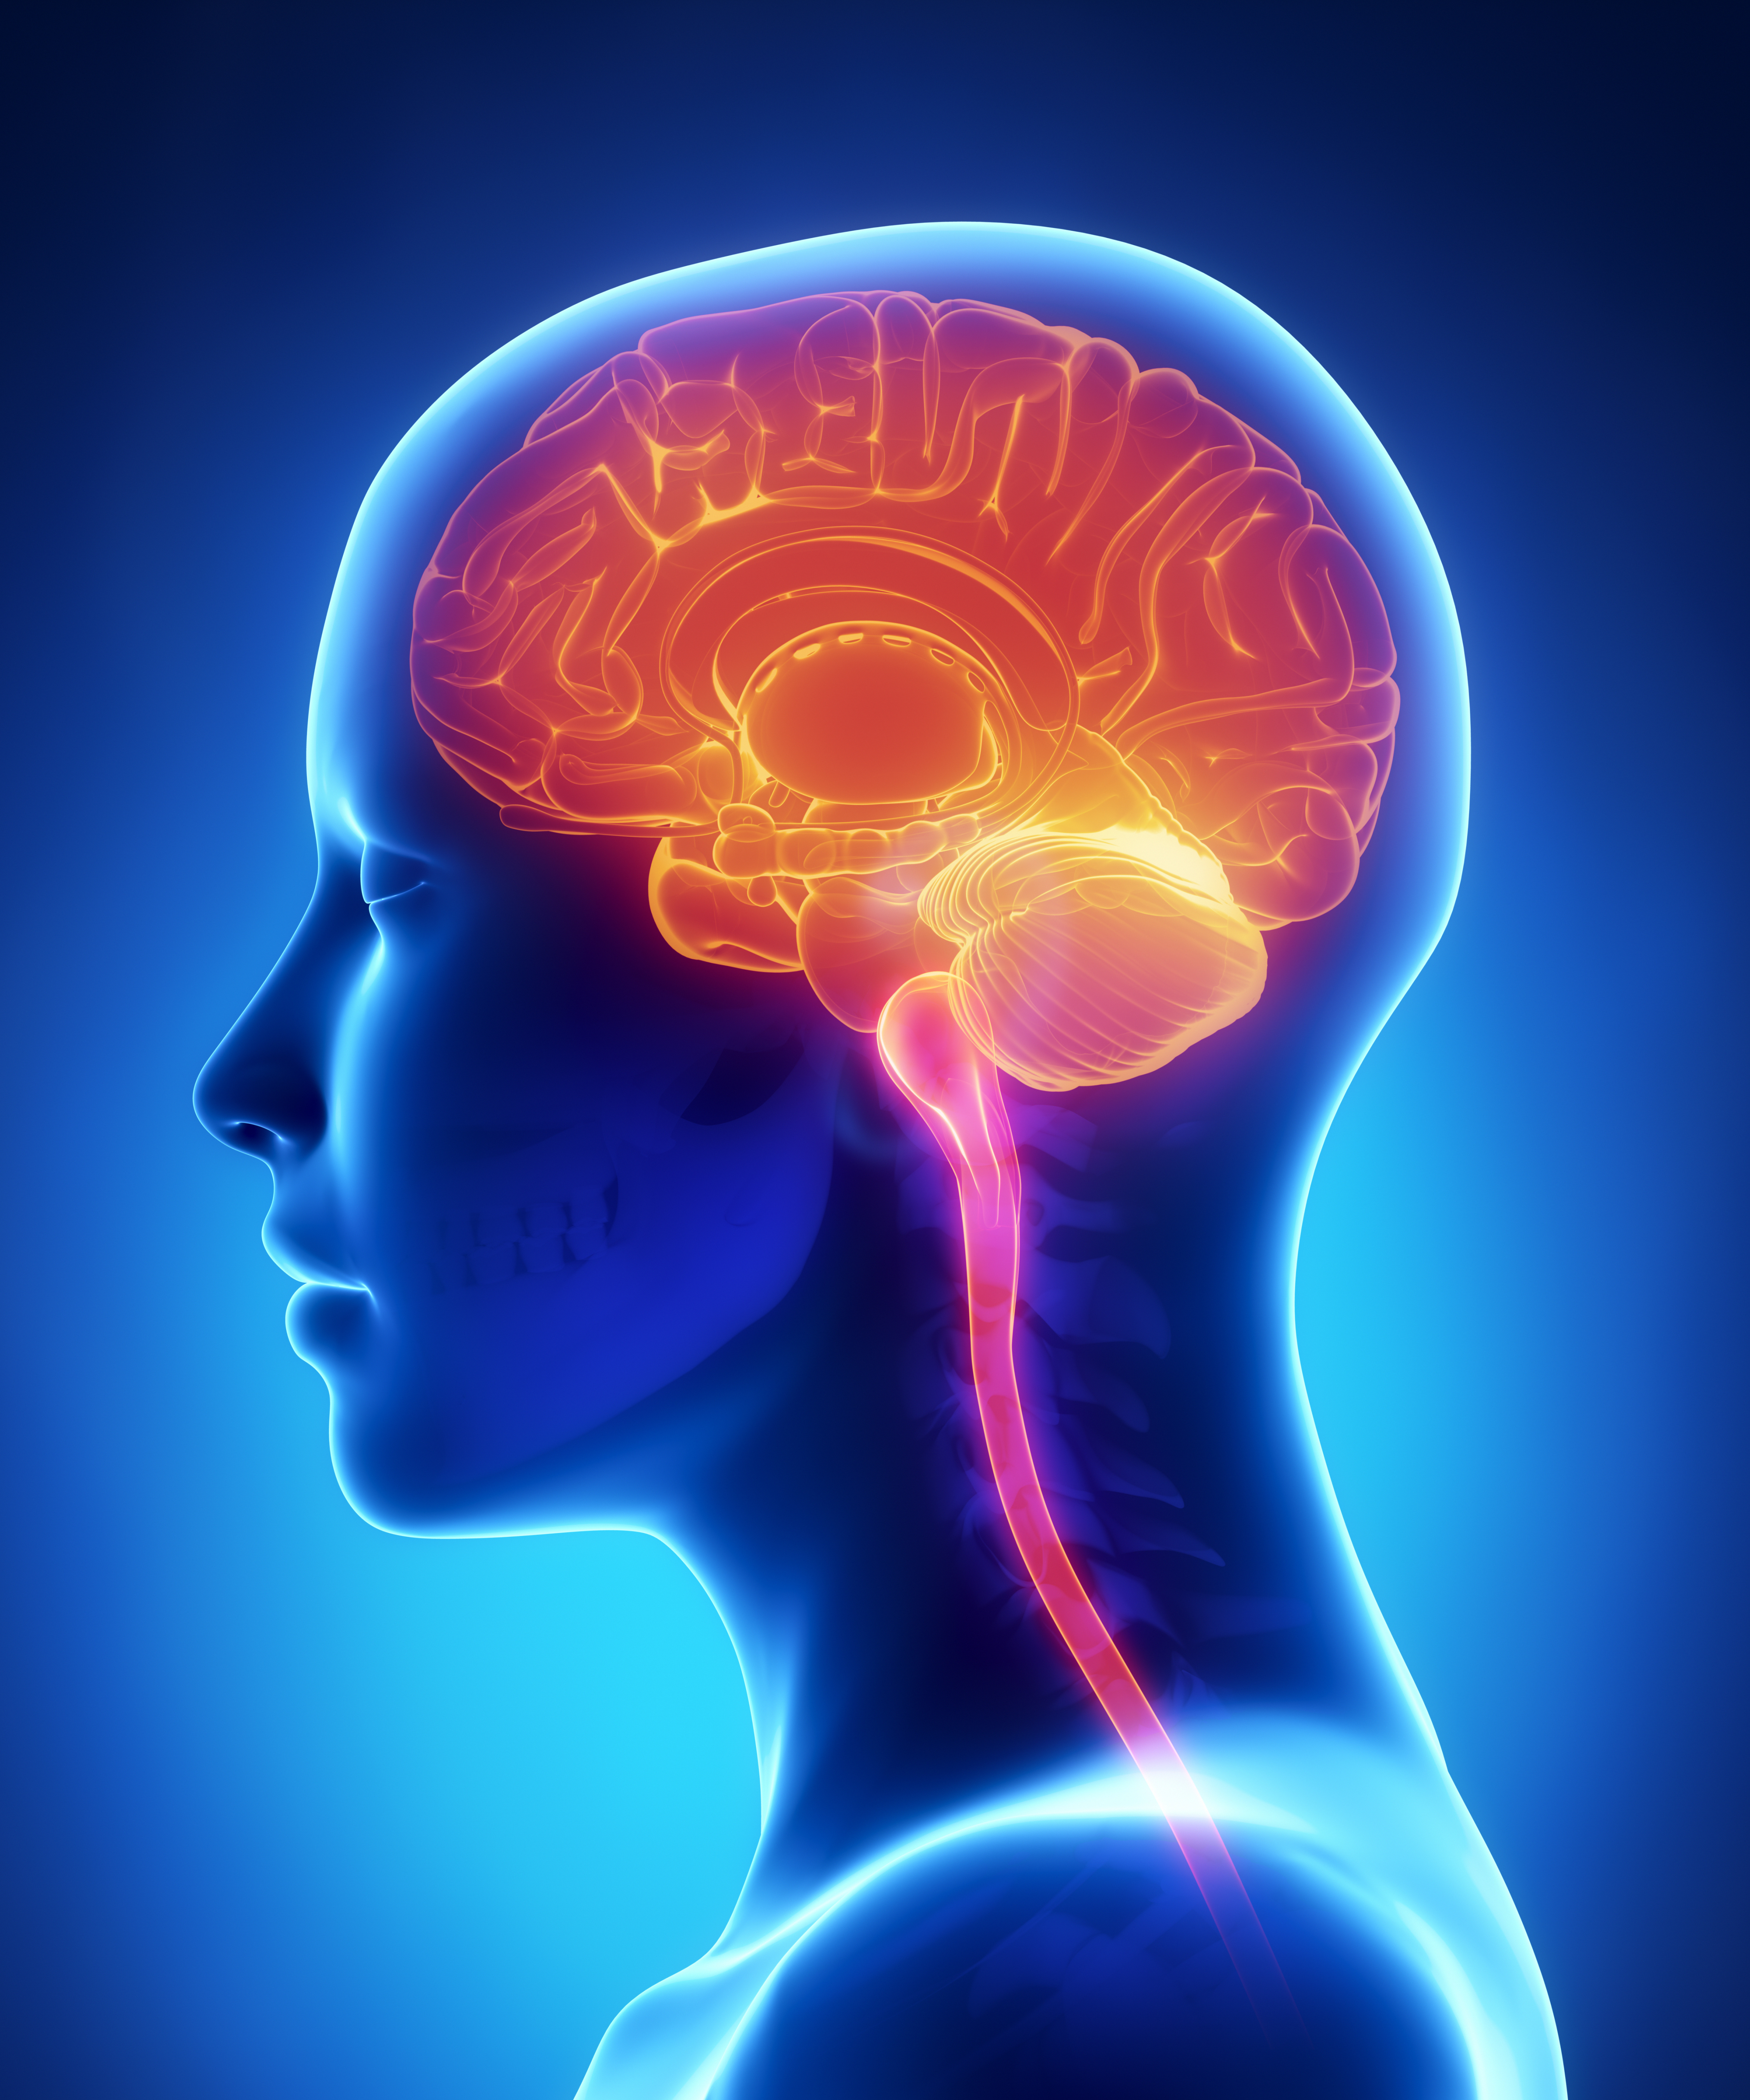 Brain diseases. Головной мозг. Нервная система человека. Изображение мозга человека.